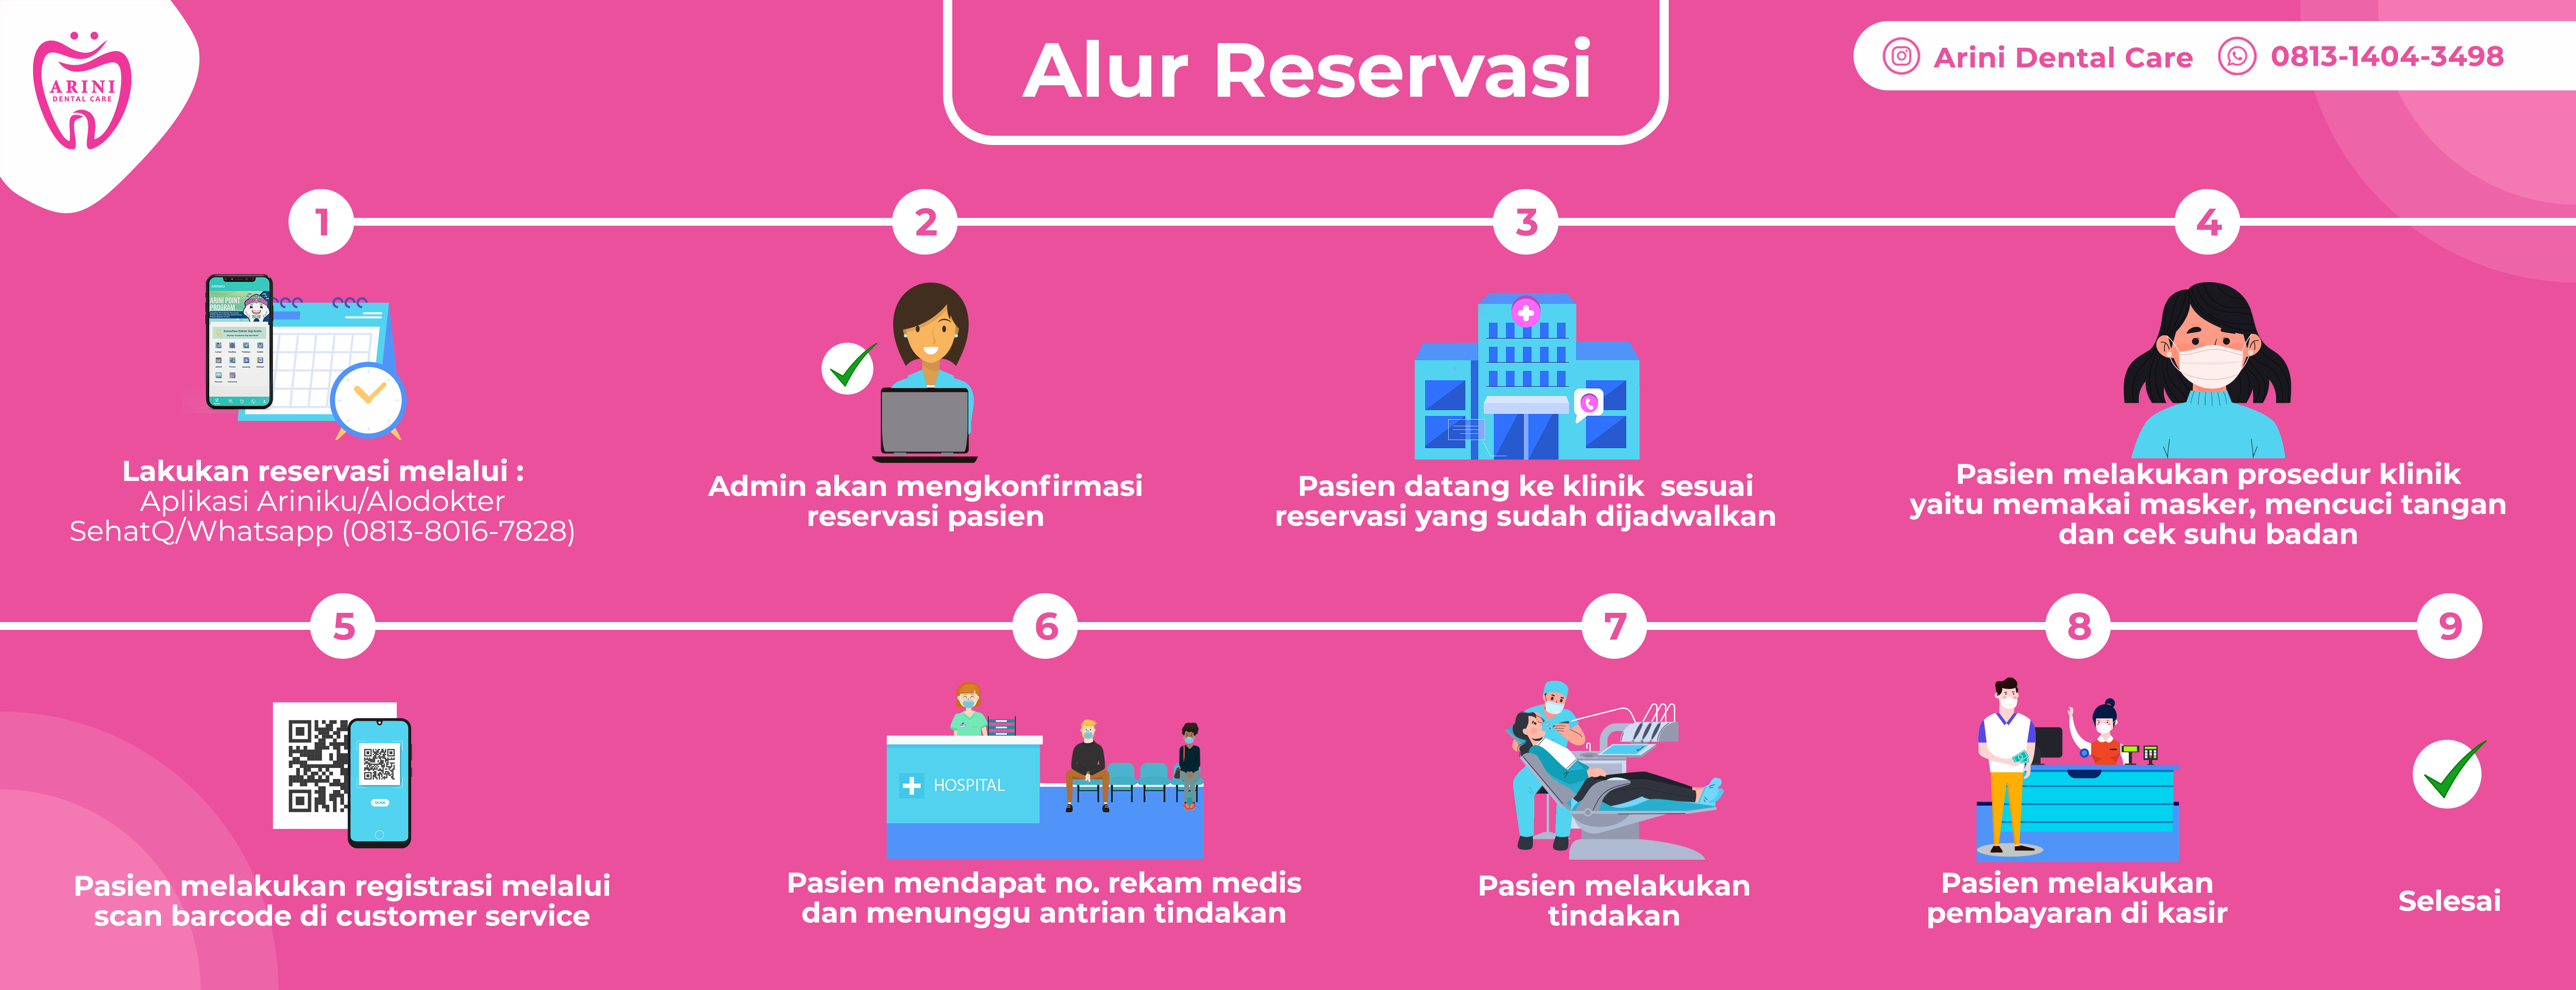 alur reservasi_arini dental care